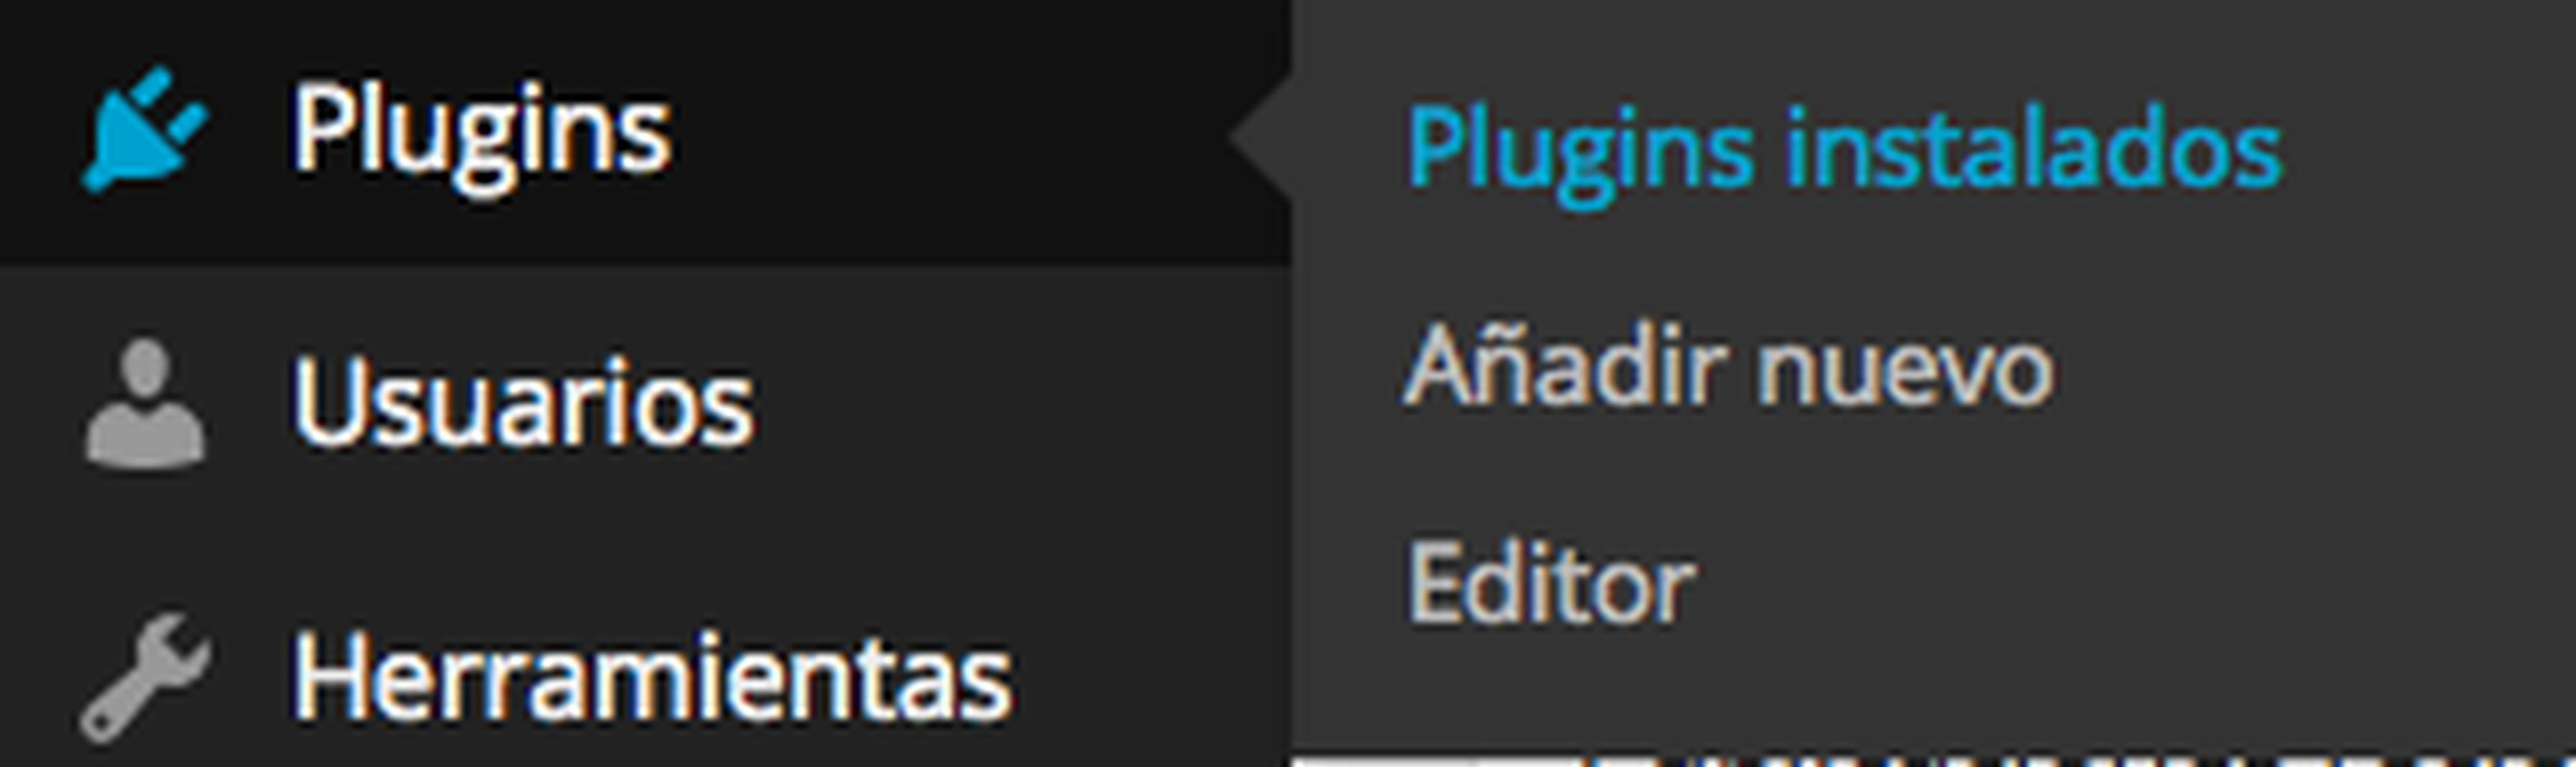 Plugins instalados en Wordpress